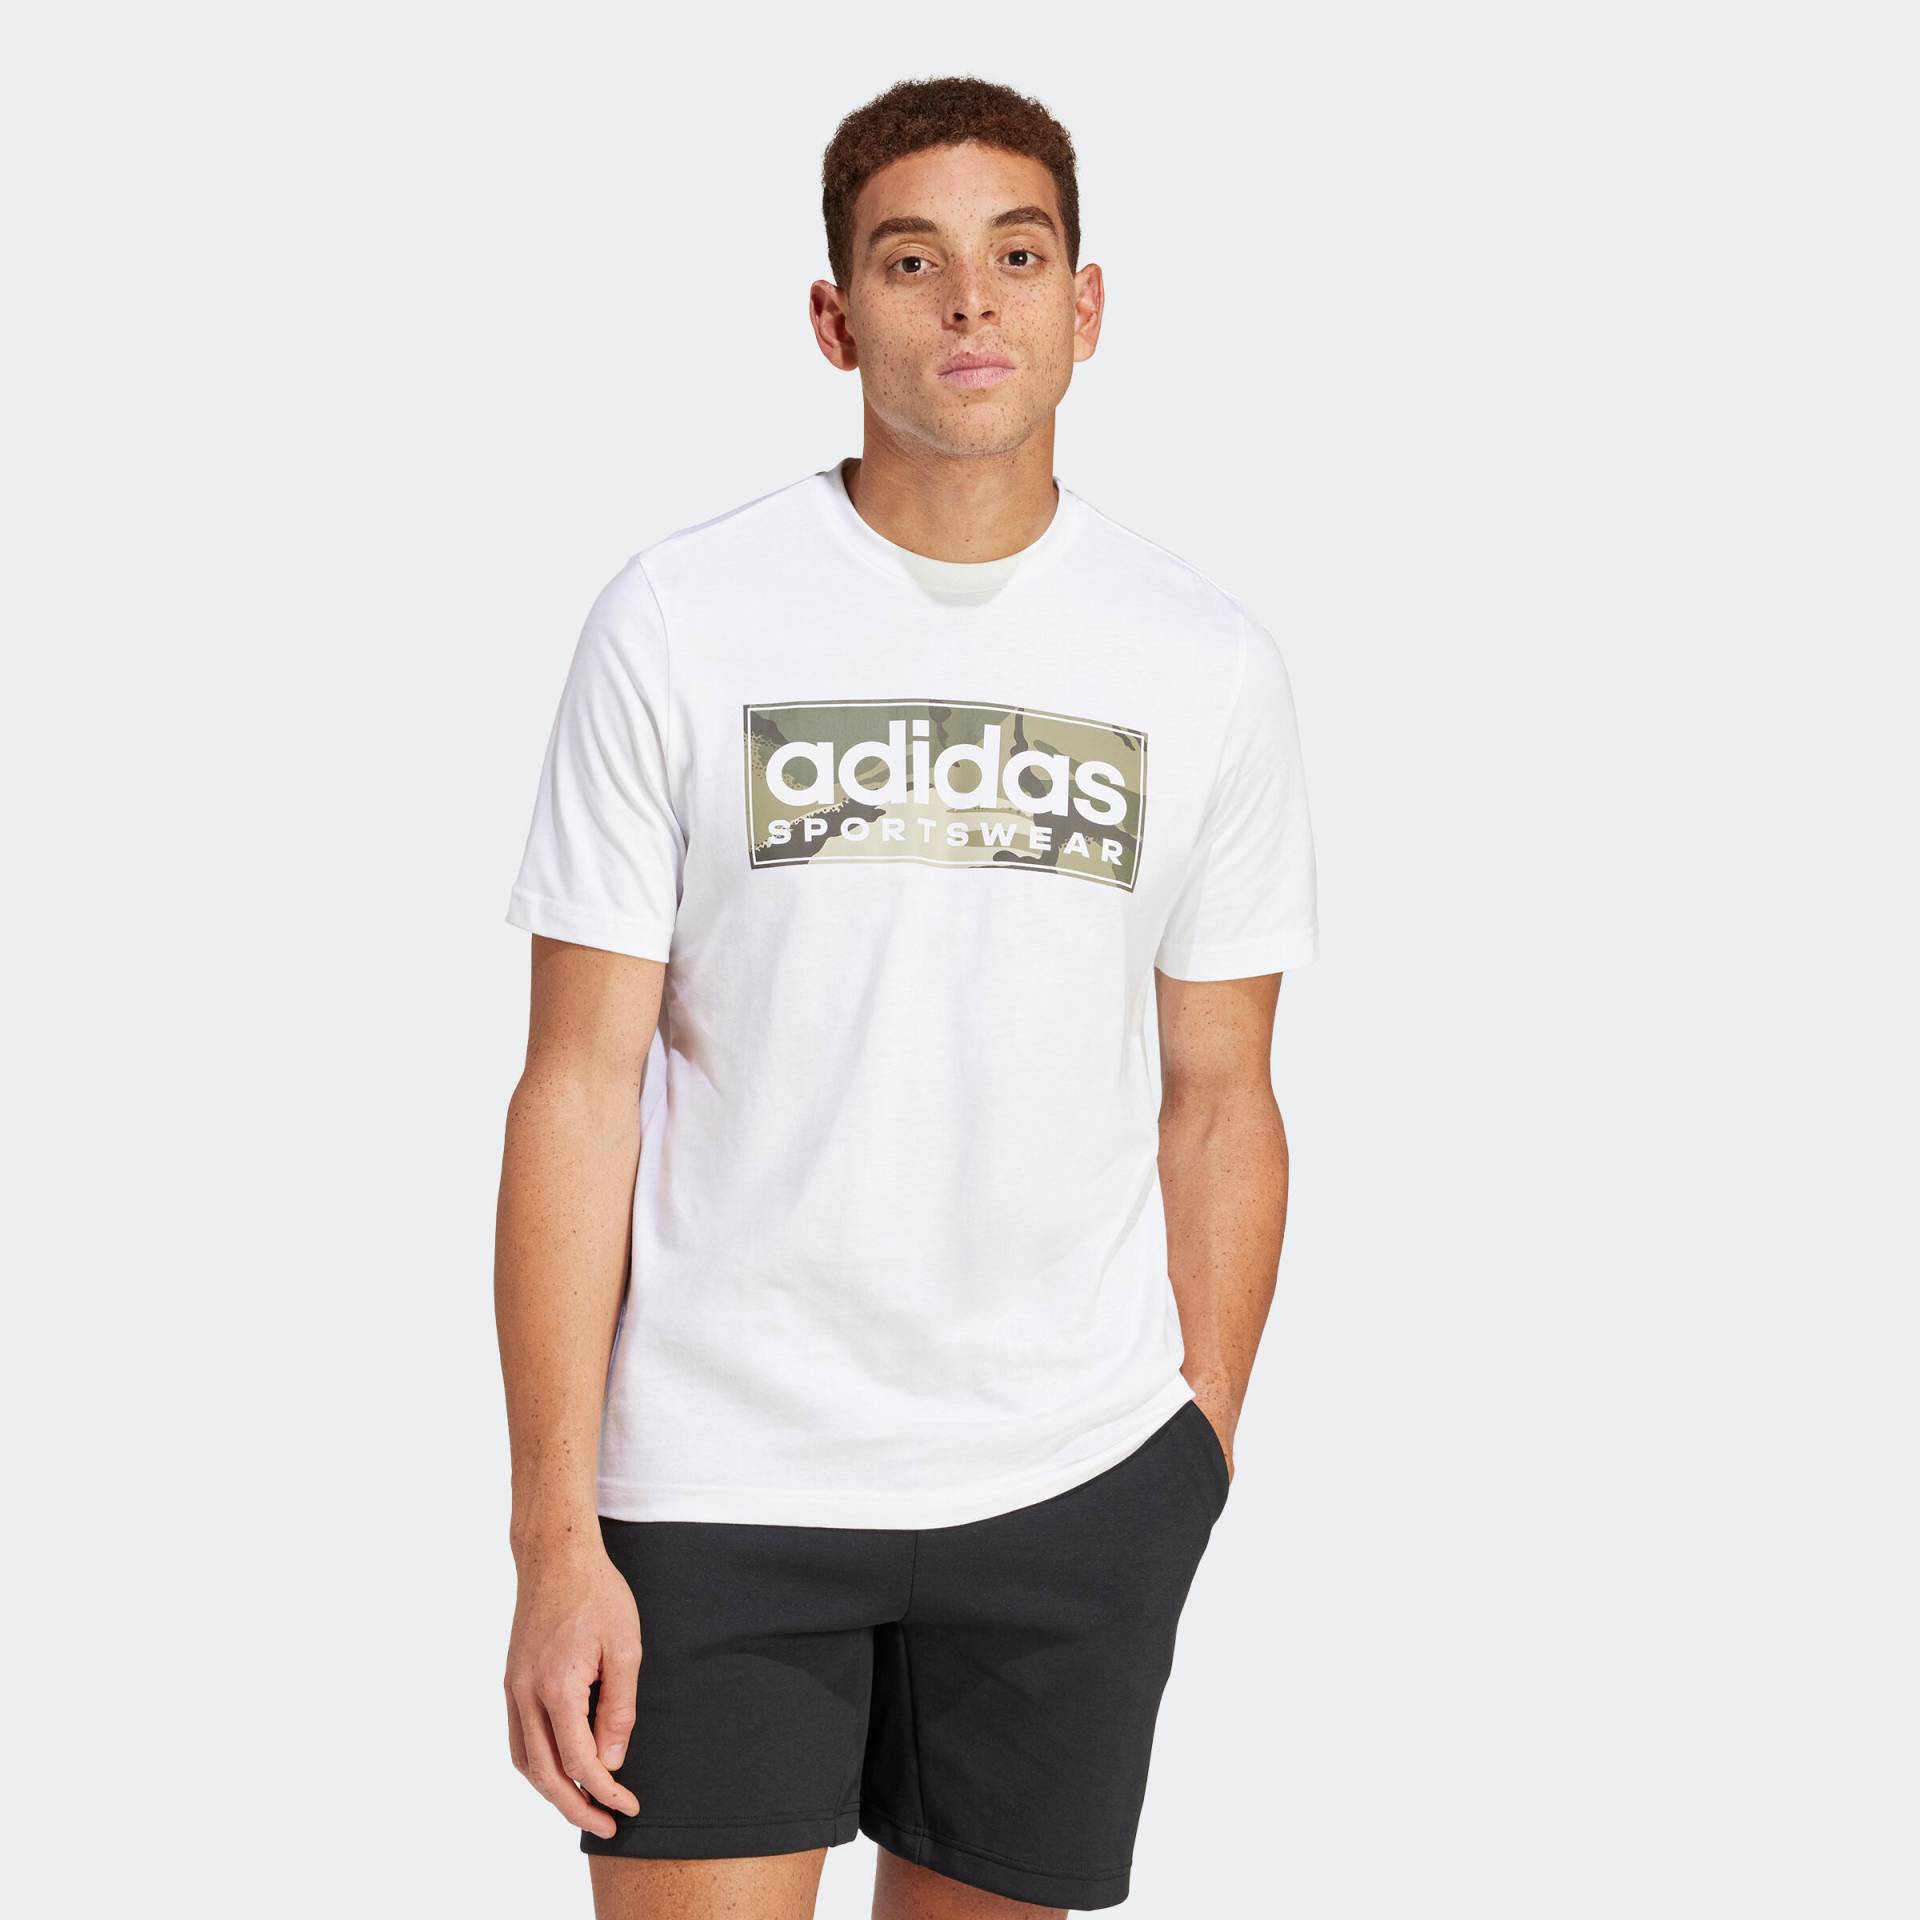 ADIDAS T-Shirt Herren weich - Camo weiss von Adidas